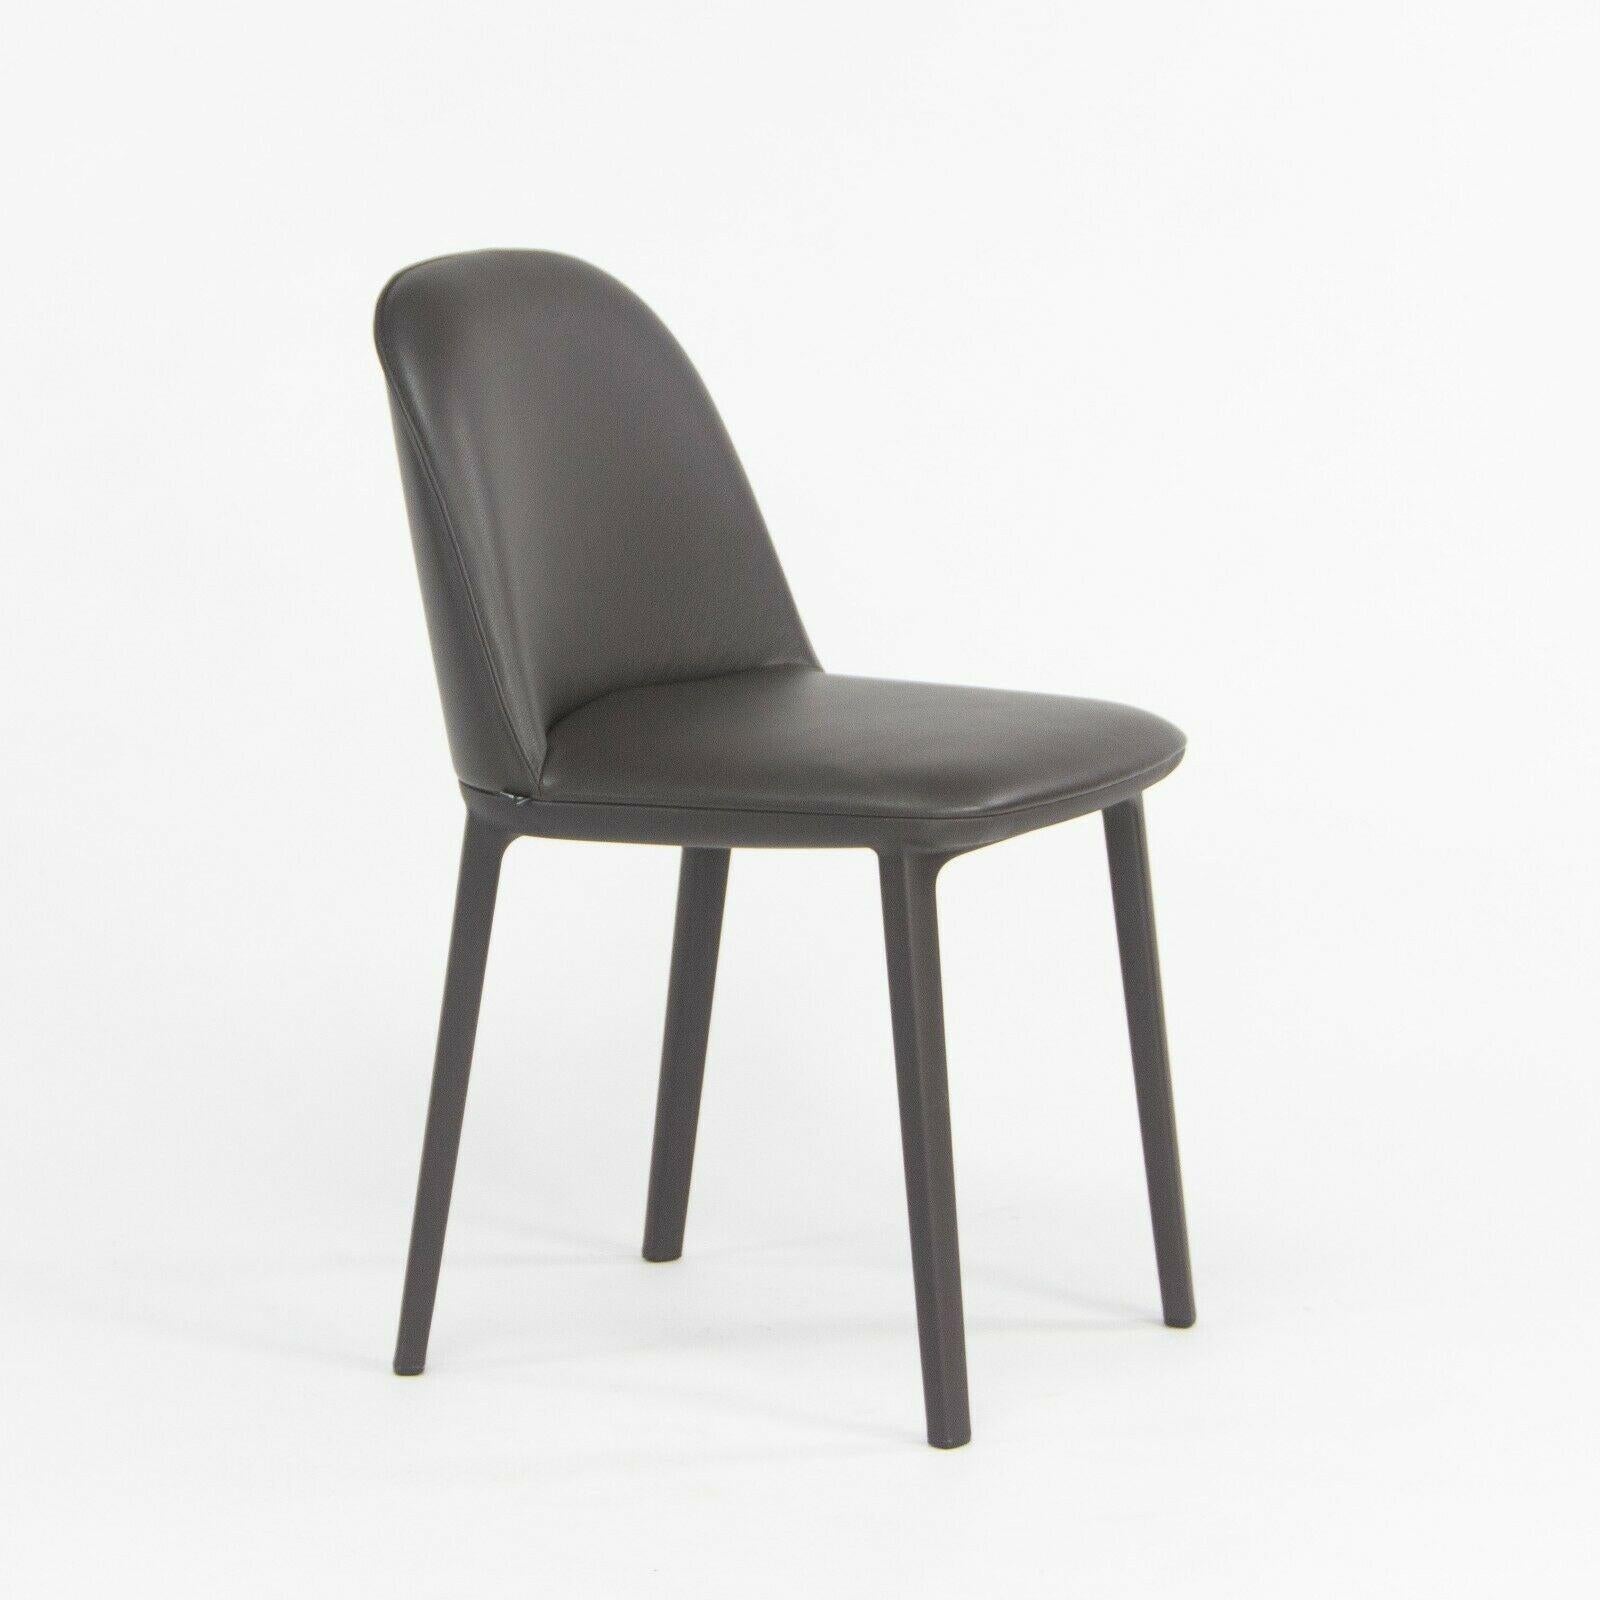 La chaise d'appoint Softshell, conçue par Ronan et Erwan Bouroullec et produite par Vitra, est proposée à la vente. Cette chaise a été fabriquée avec une base en plastique de couleur chocolat (très foncé) et une assise recouverte de cuir pleine